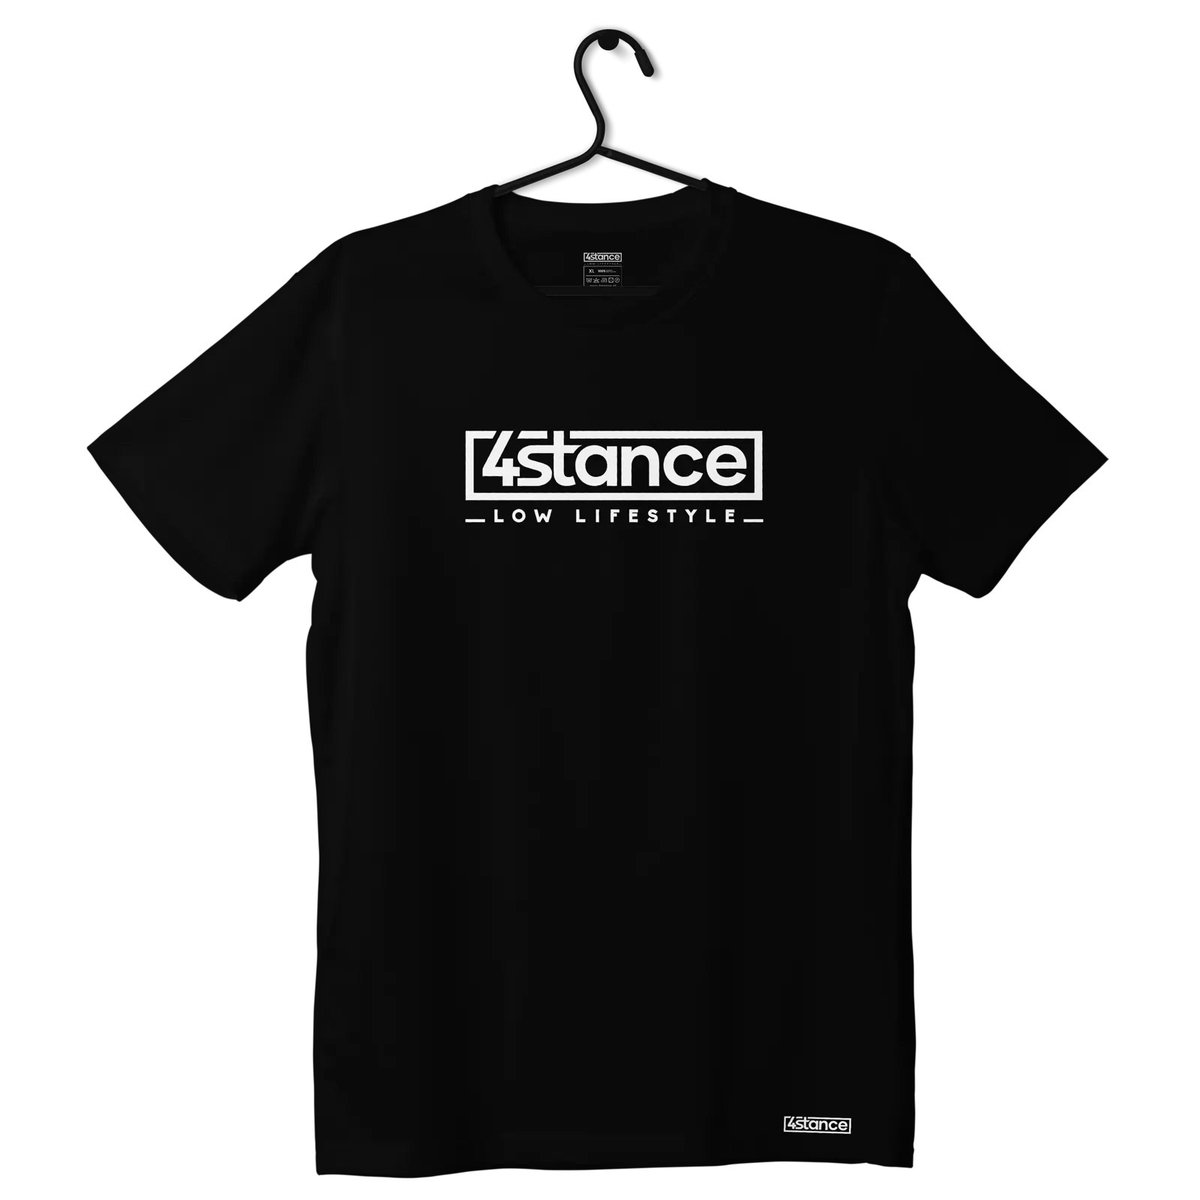 Zdjęcia - Odzież motocyklowa Classic T-shirt koszulka 4STANCE  czarna-3XL 